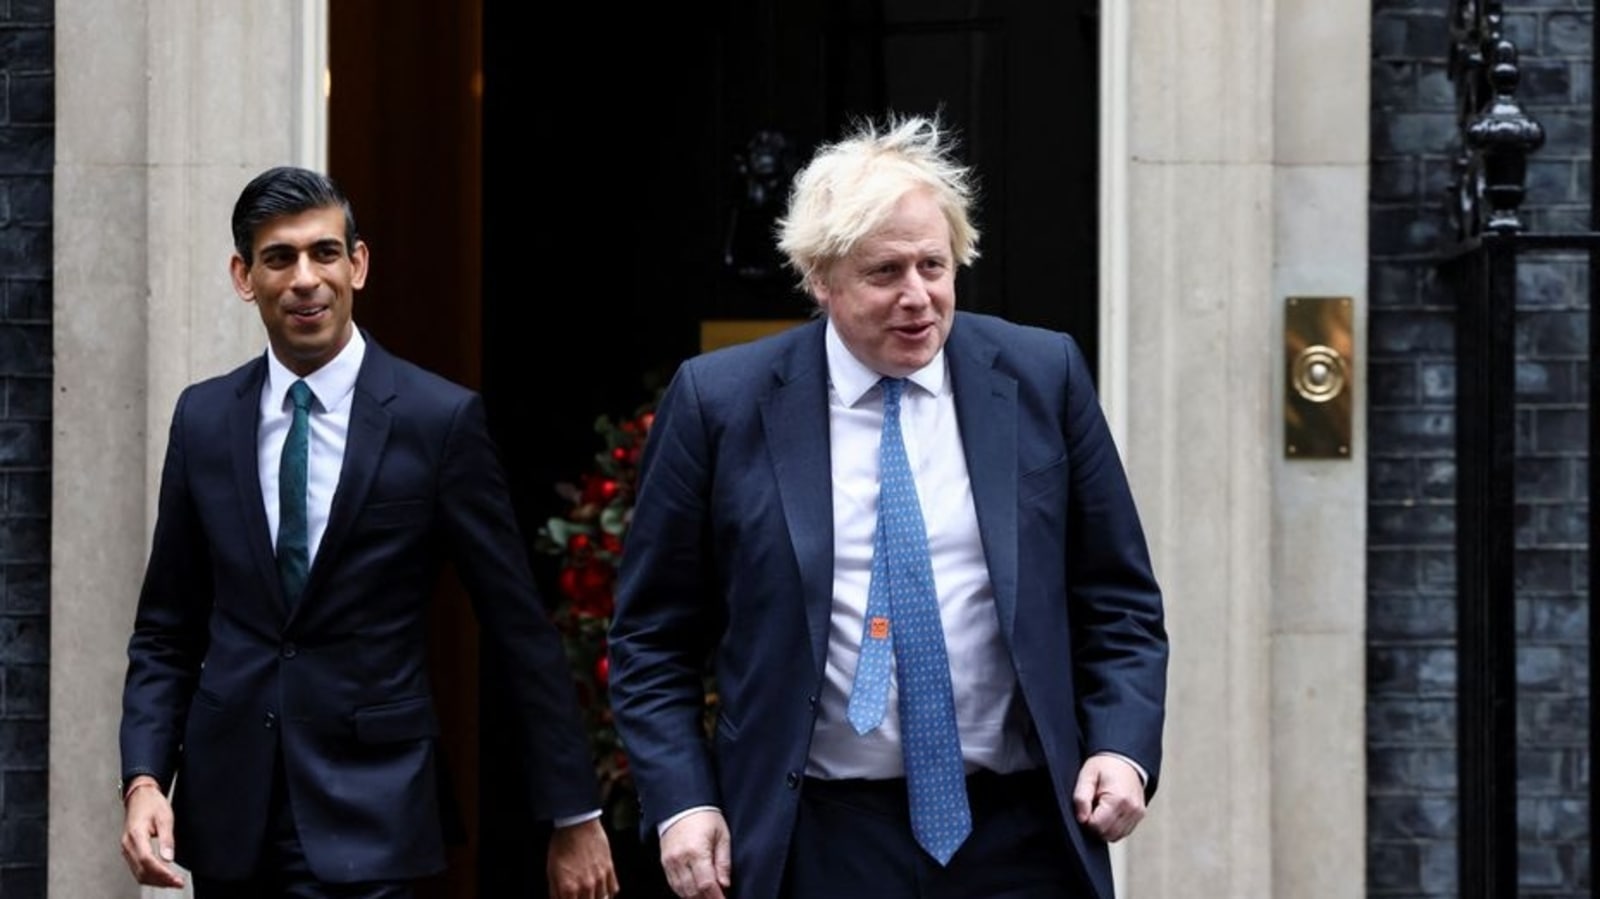 Boris Johnson dan Rishi Sunak mengadakan pembicaraan empat mata di tengah persaingan kepemimpinan Inggris |  berita Dunia